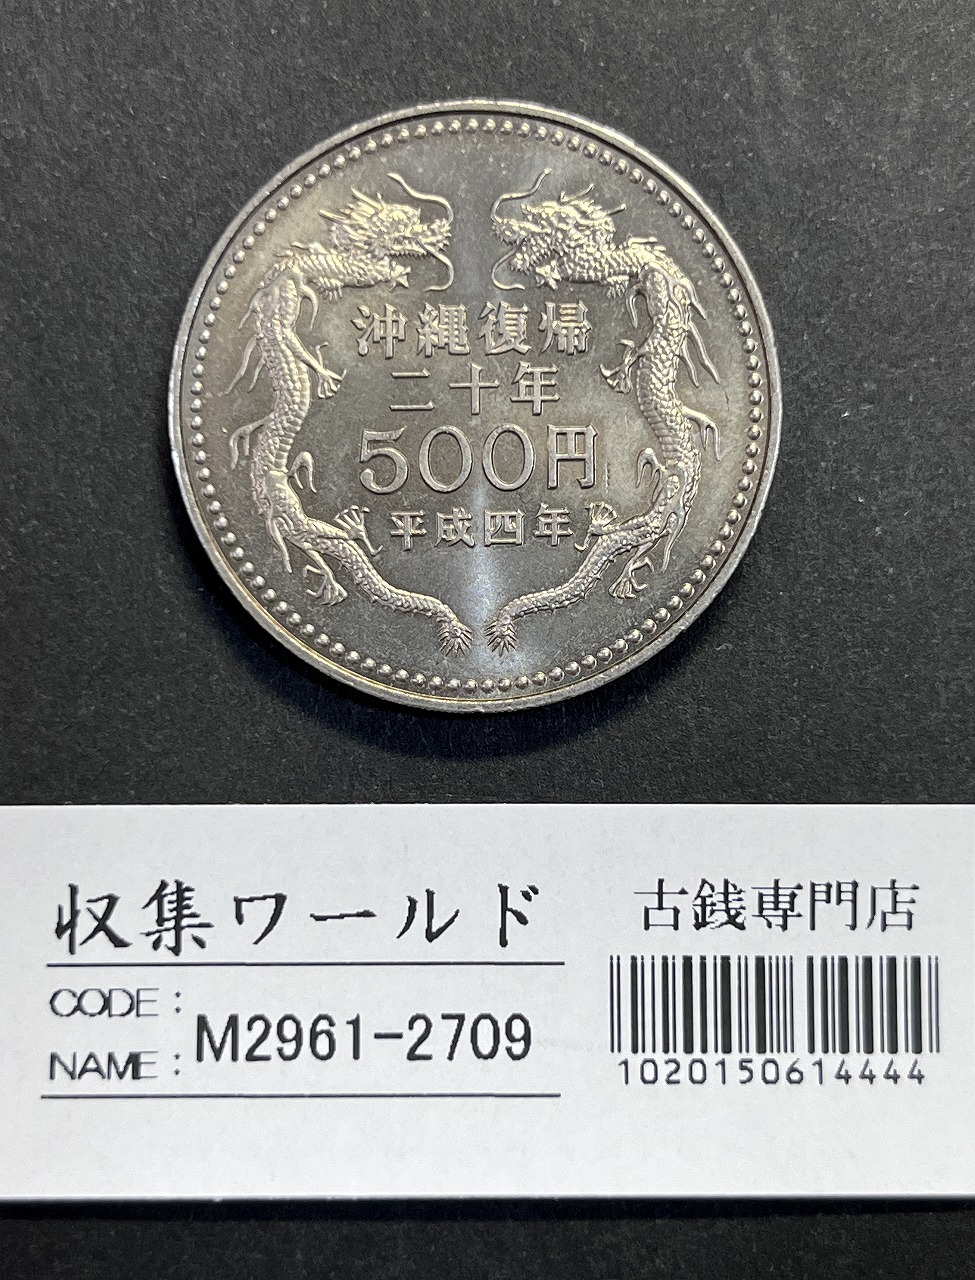 平成4年(1992) 沖縄復帰20周年記念 500円白銅貨 未使用極美-2709